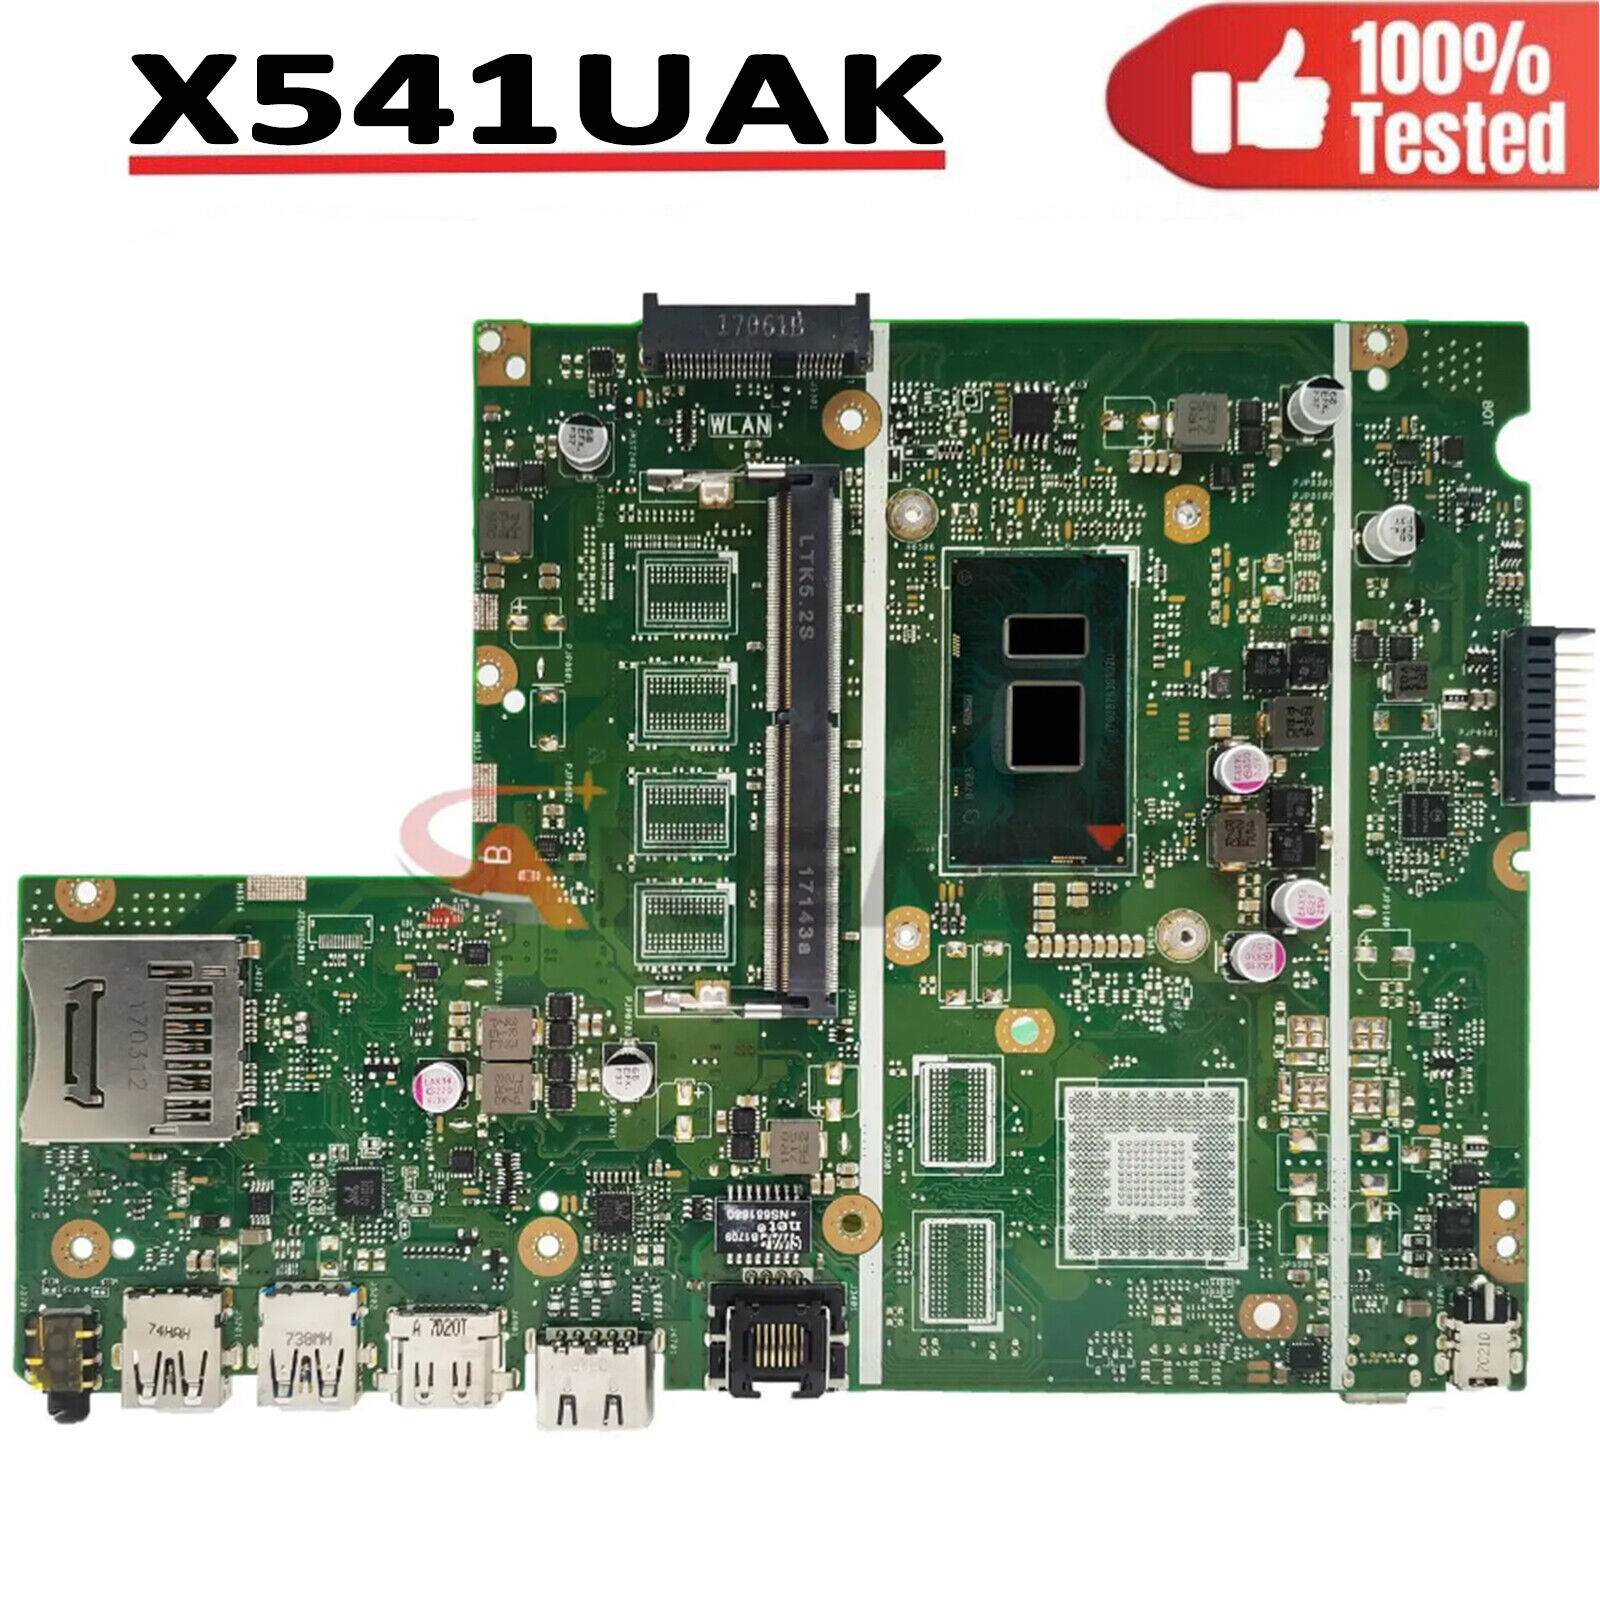 X541uvk Laptop Mainboard For Asus X541uj X541uv X541u I3-6006u X541uak Tested Ok